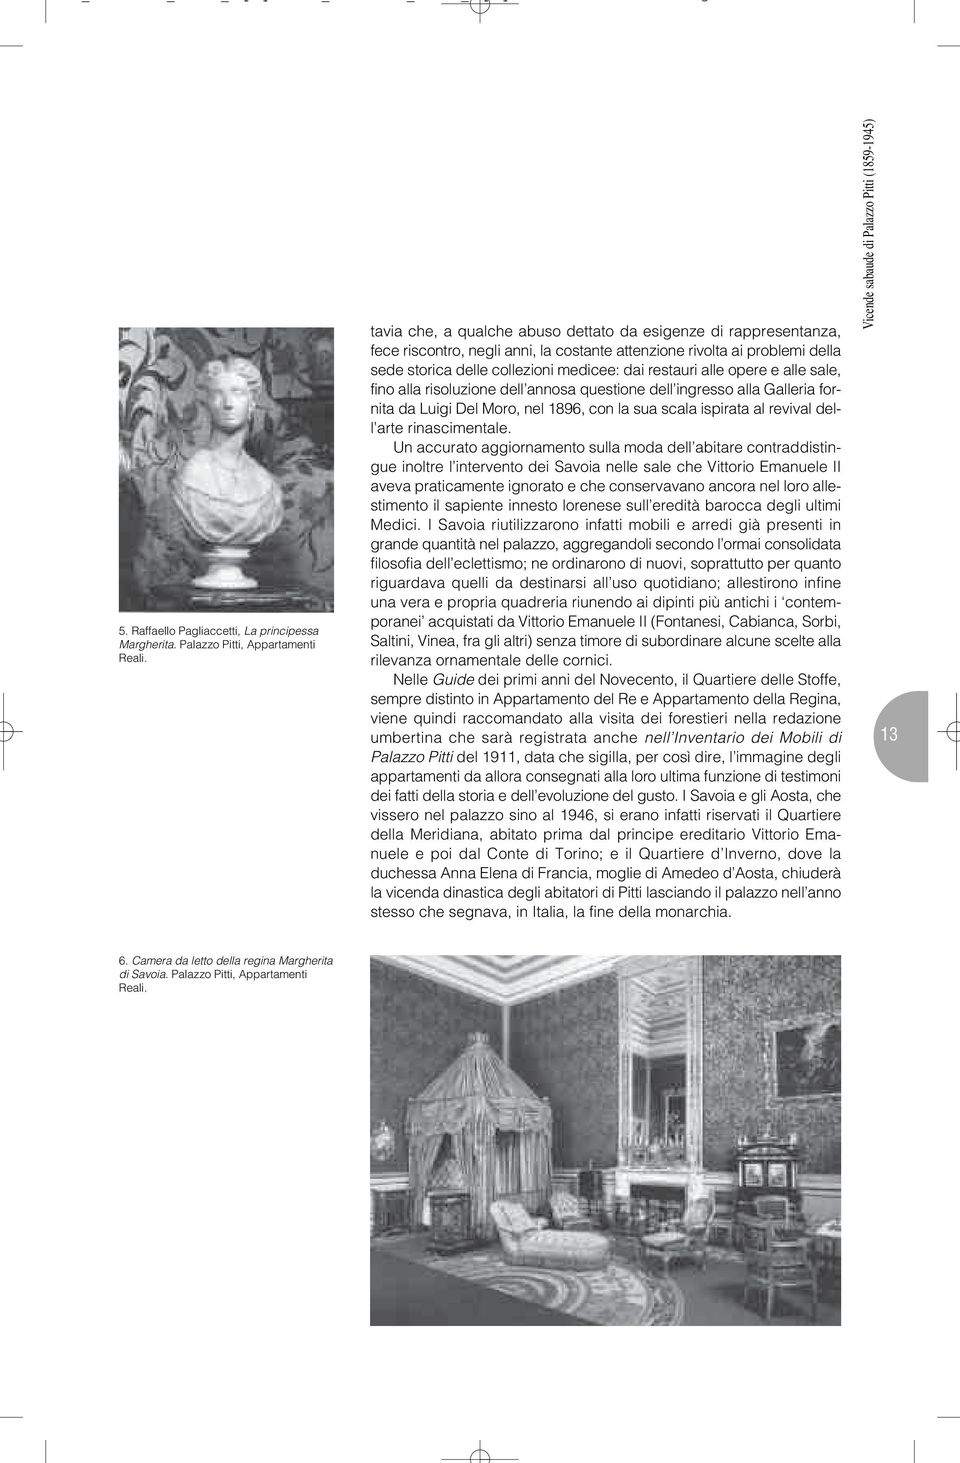 opere e alle sale, fino alla risoluzione dell annosa questione dell ingresso alla Galleria fornita da Luigi Del Moro, nel 1896, con la sua scala ispirata al revival dell arte rinascimentale.